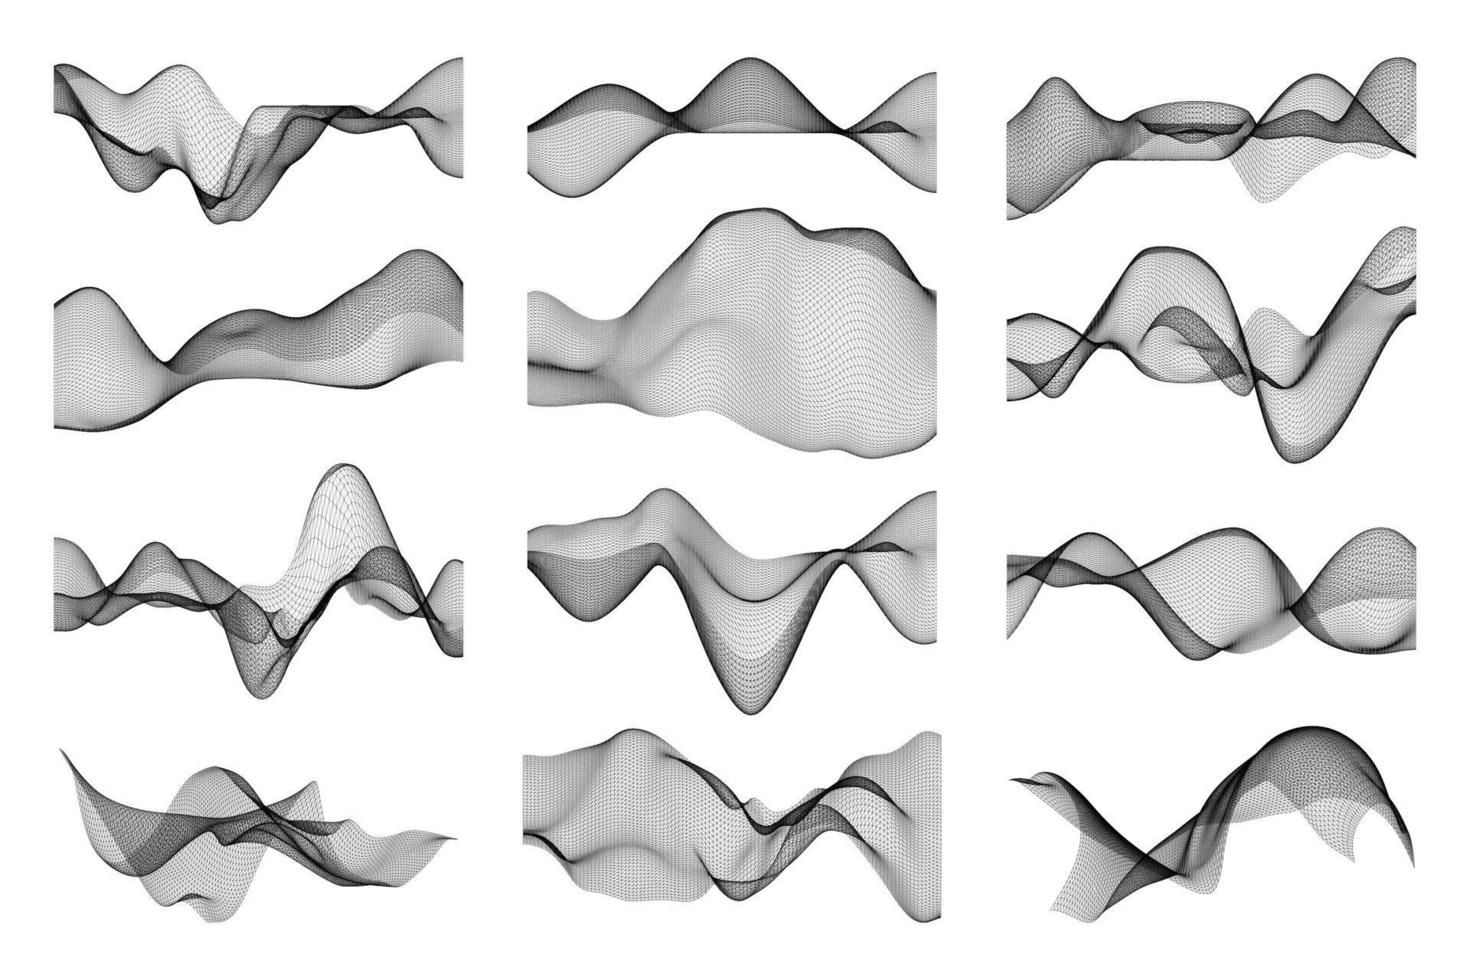 abstracte volumetrische vormen vector